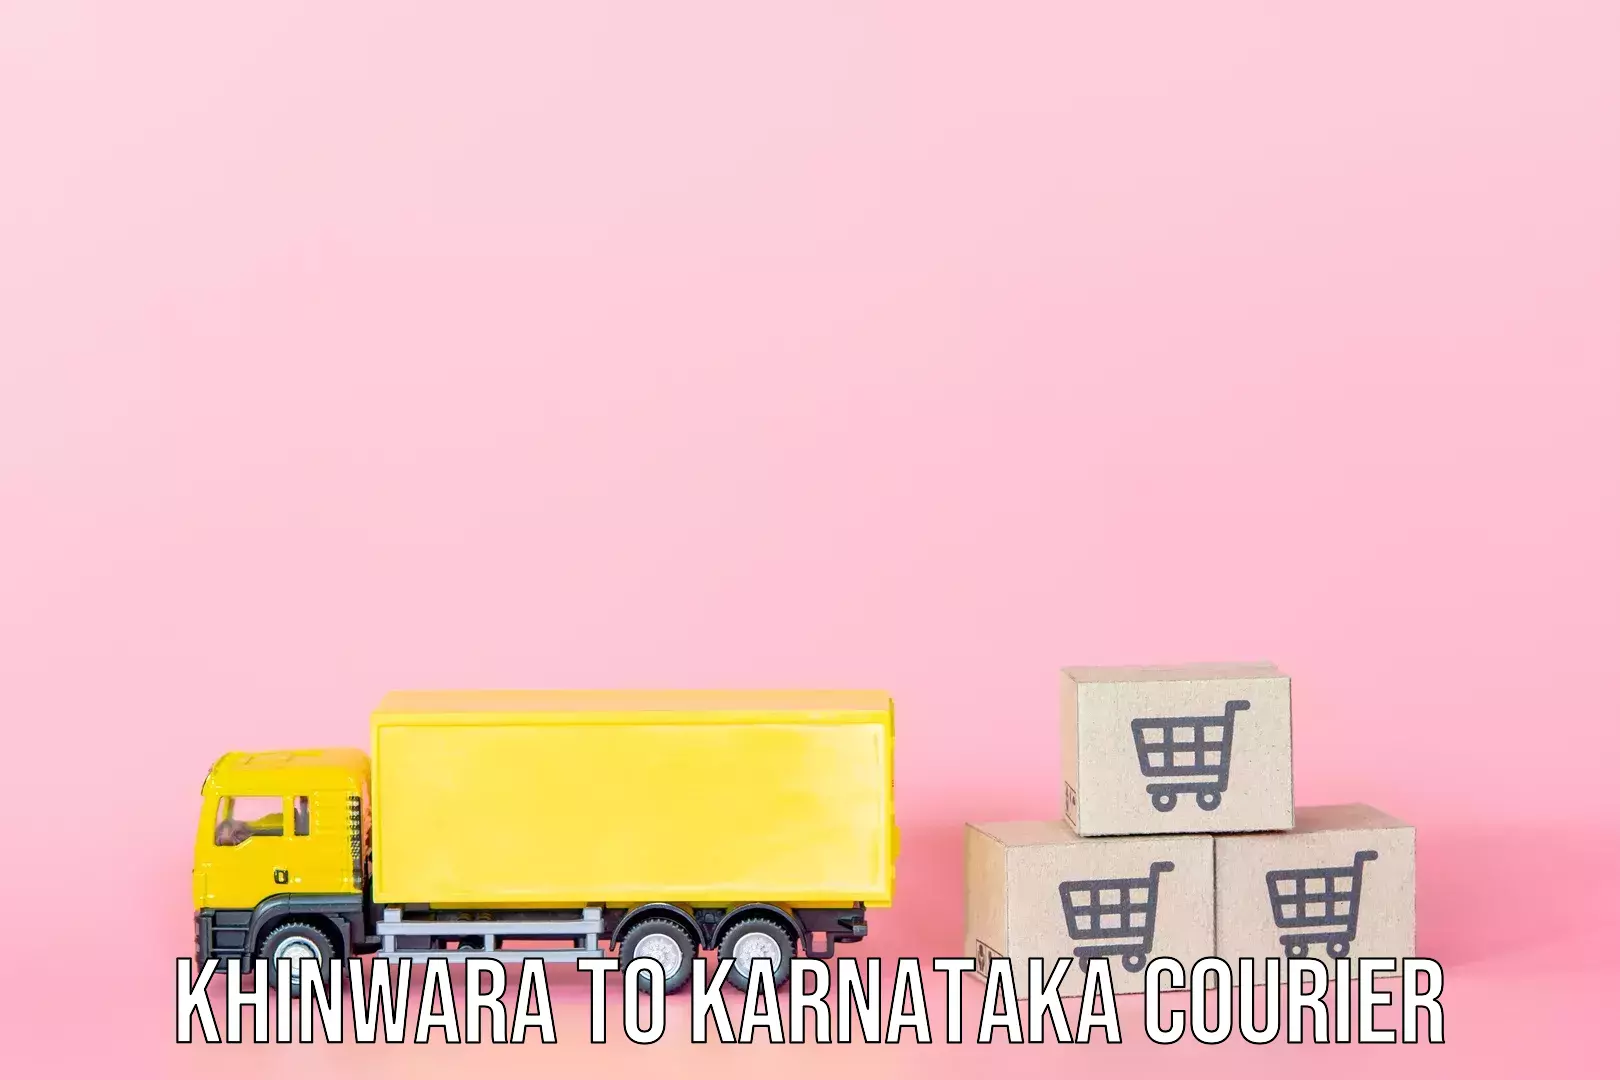 Luggage dispatch service Khinwara to Karnataka